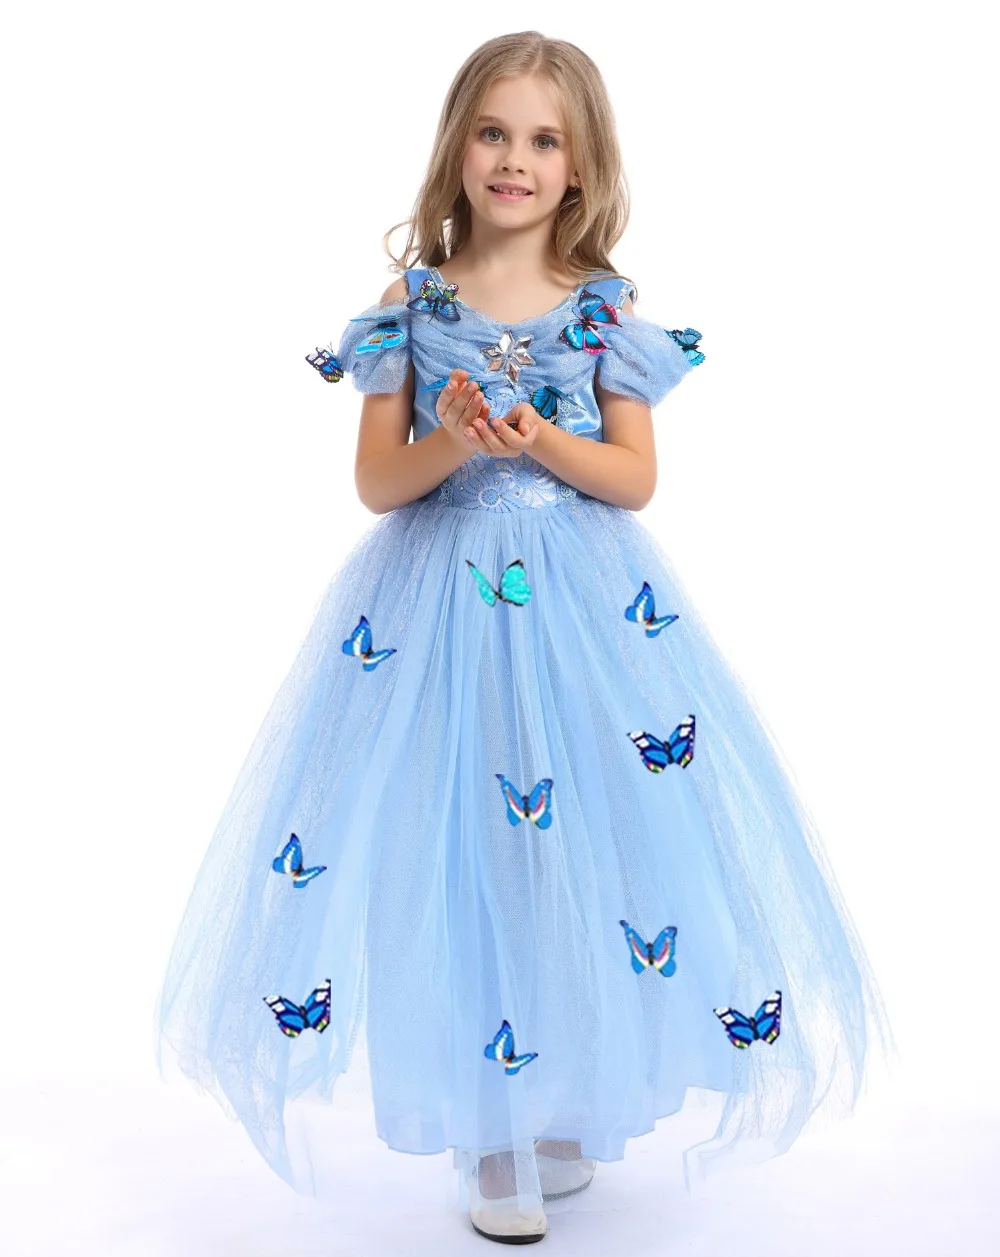 Платье принцессы Золушки для девочек; костюмы для детей; платья для костюмированной вечеринки; Детские Вечерние платья на Хэллоуин и день рождения с 10 бабочками